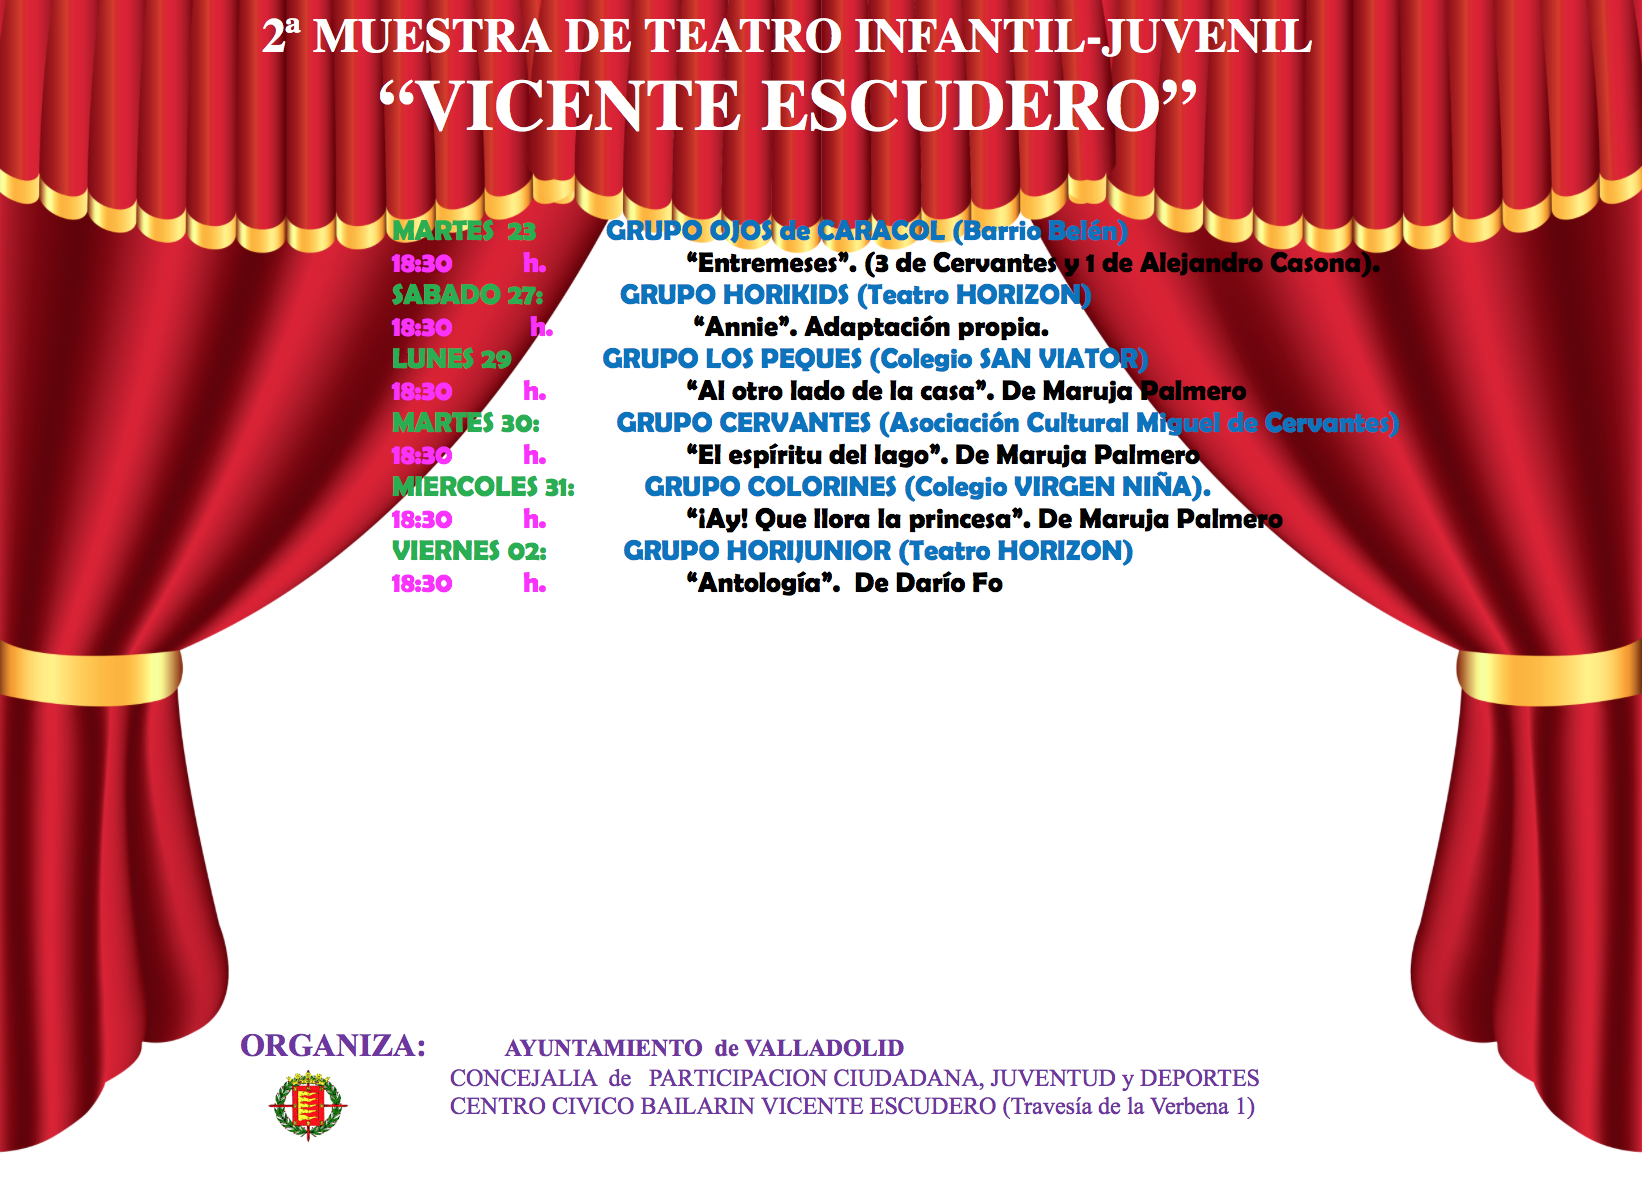 2ª Muestra de Teatro Infantil-Juvenil en el Centro Cívico Bailarín Vicente Escudero